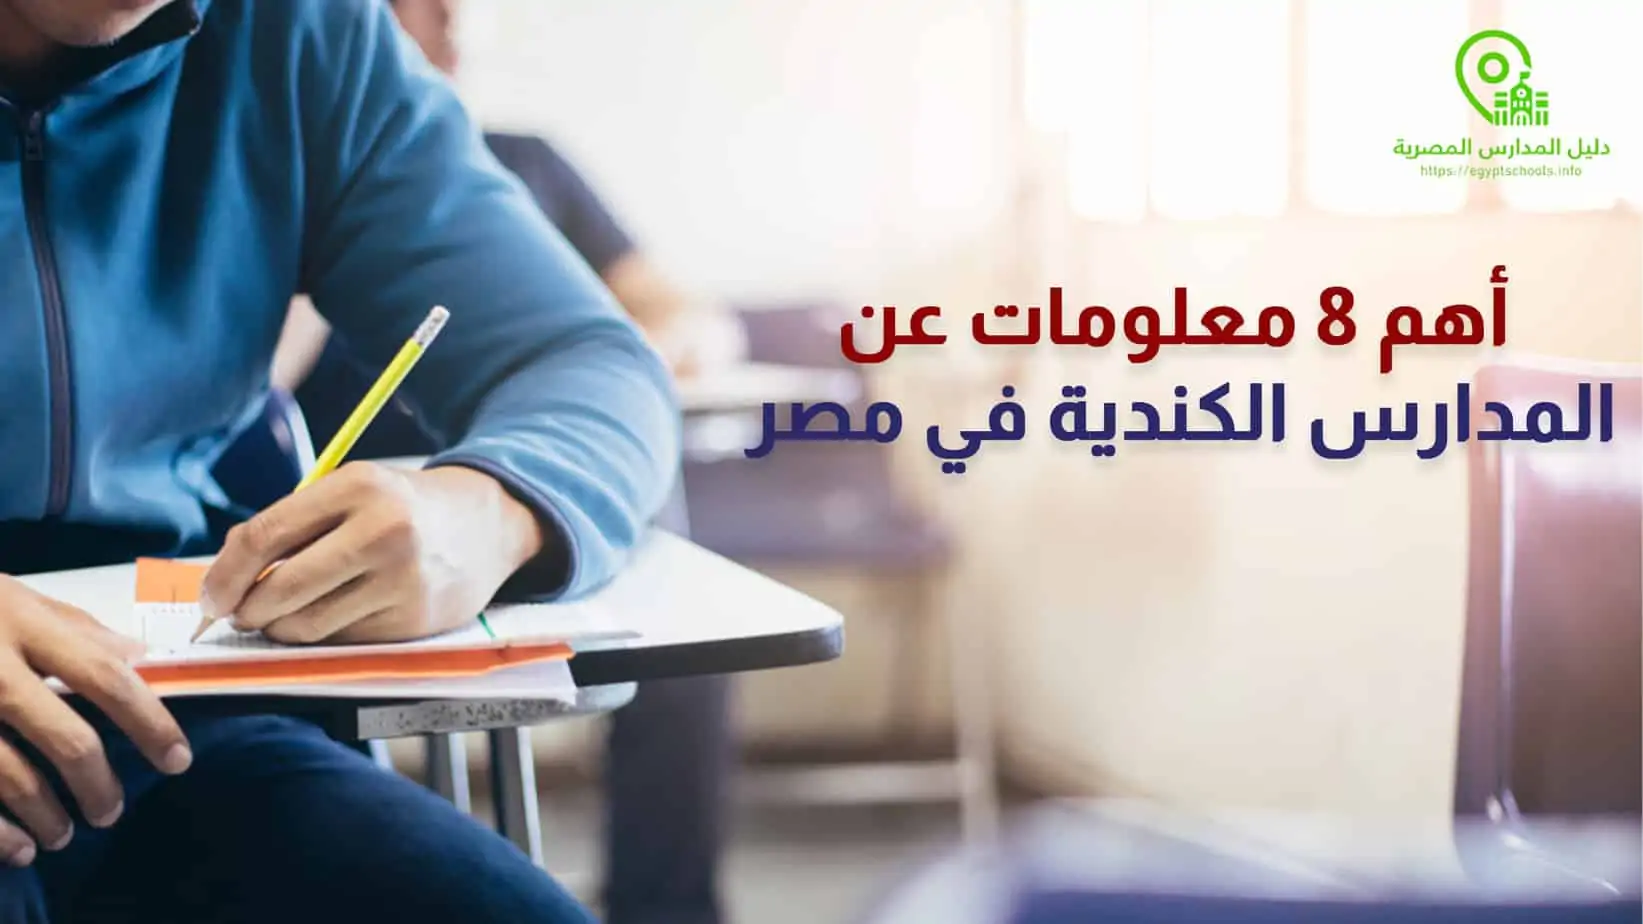 أهم 8 معلومات عن المدارس الكندية في مصر 2021 المزيد على موقع دليل المدارس المصرية: أهم 8 معلومات عن المدارس الكندية في مصر 2021